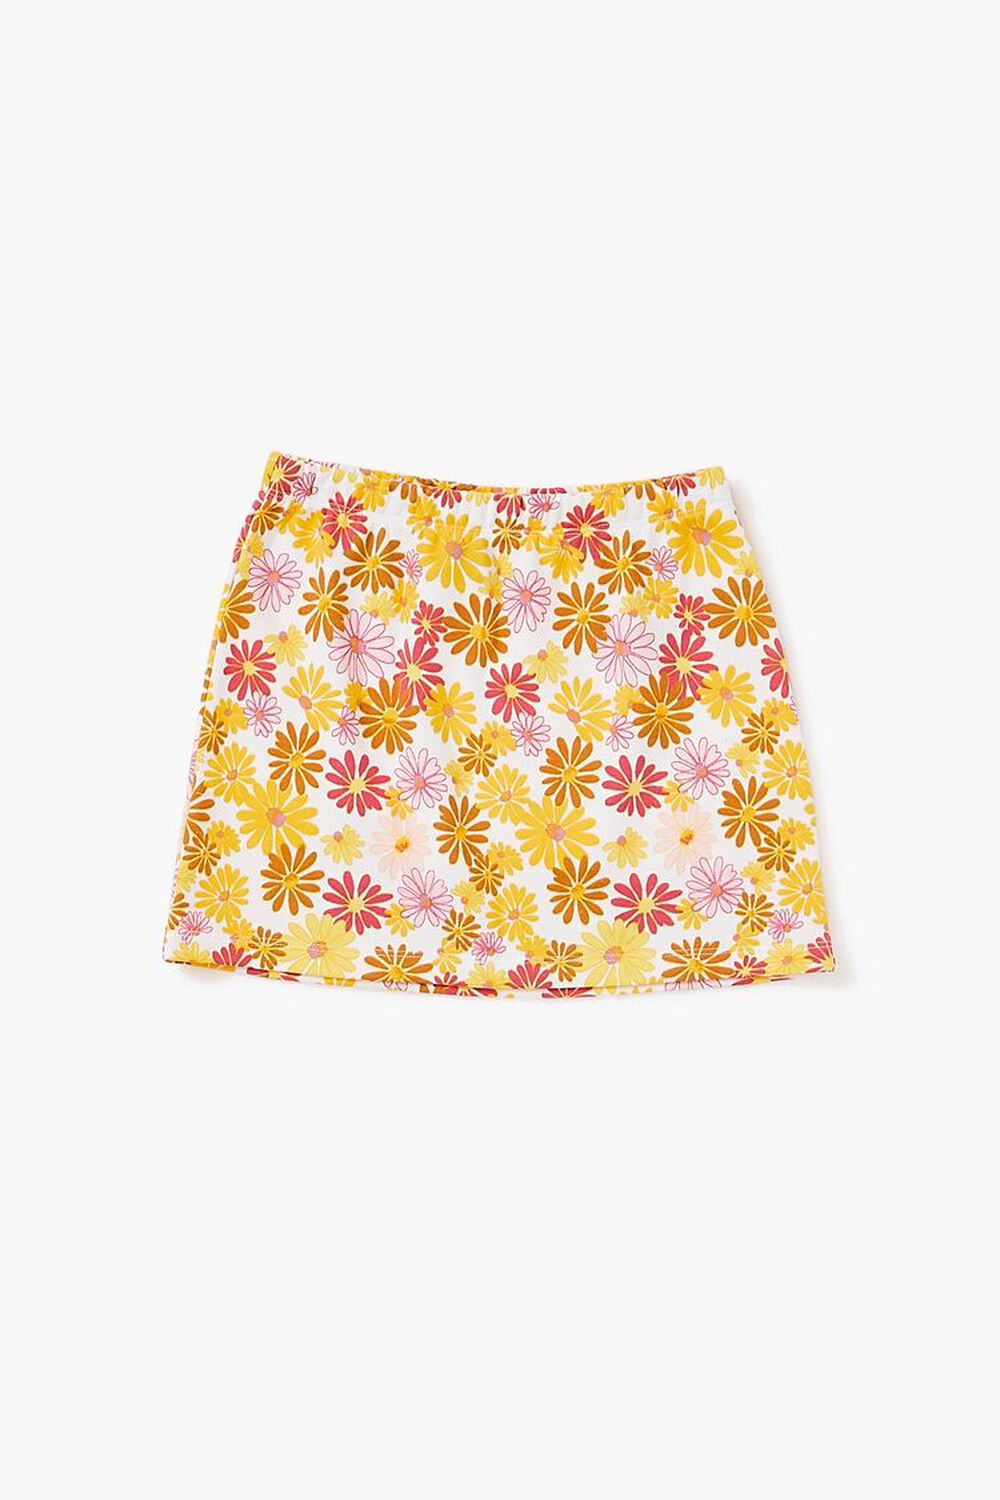 WHITE/MULTI Girls Floral Skirt (Kids), image 1